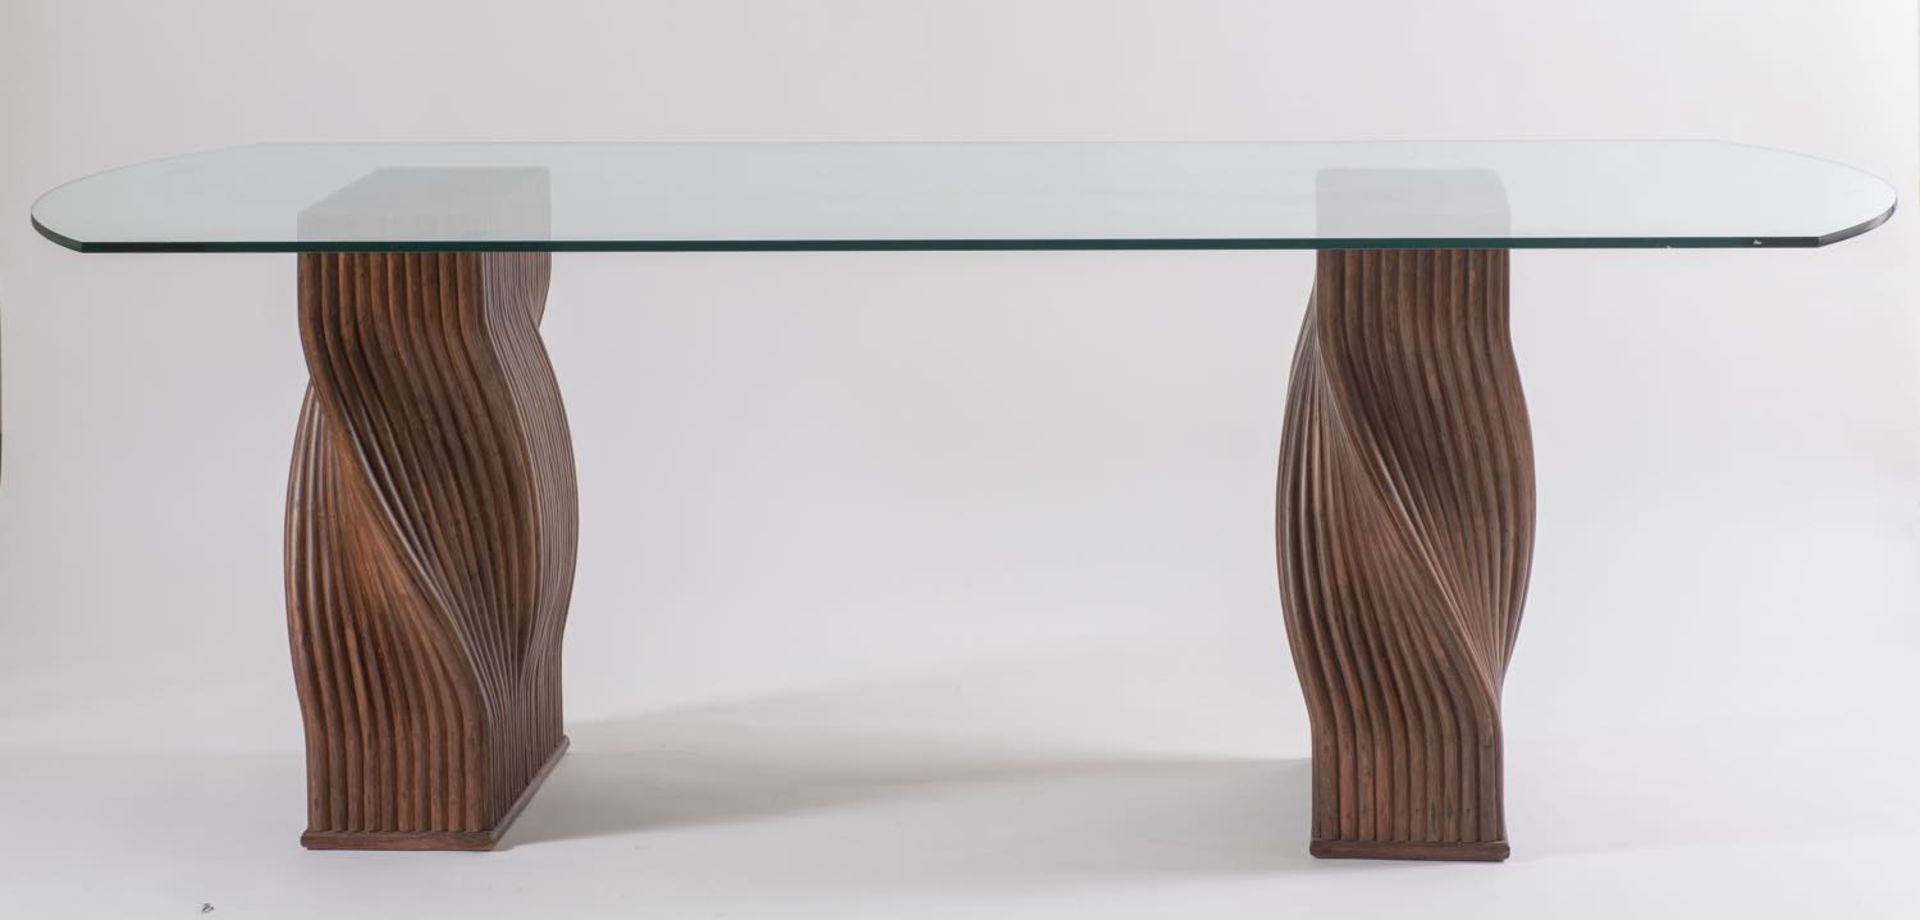 Coppia di basi per tavolo in bambù ritorto a tinta scura, Italia, Anni ‘70.H cm 70x60x21